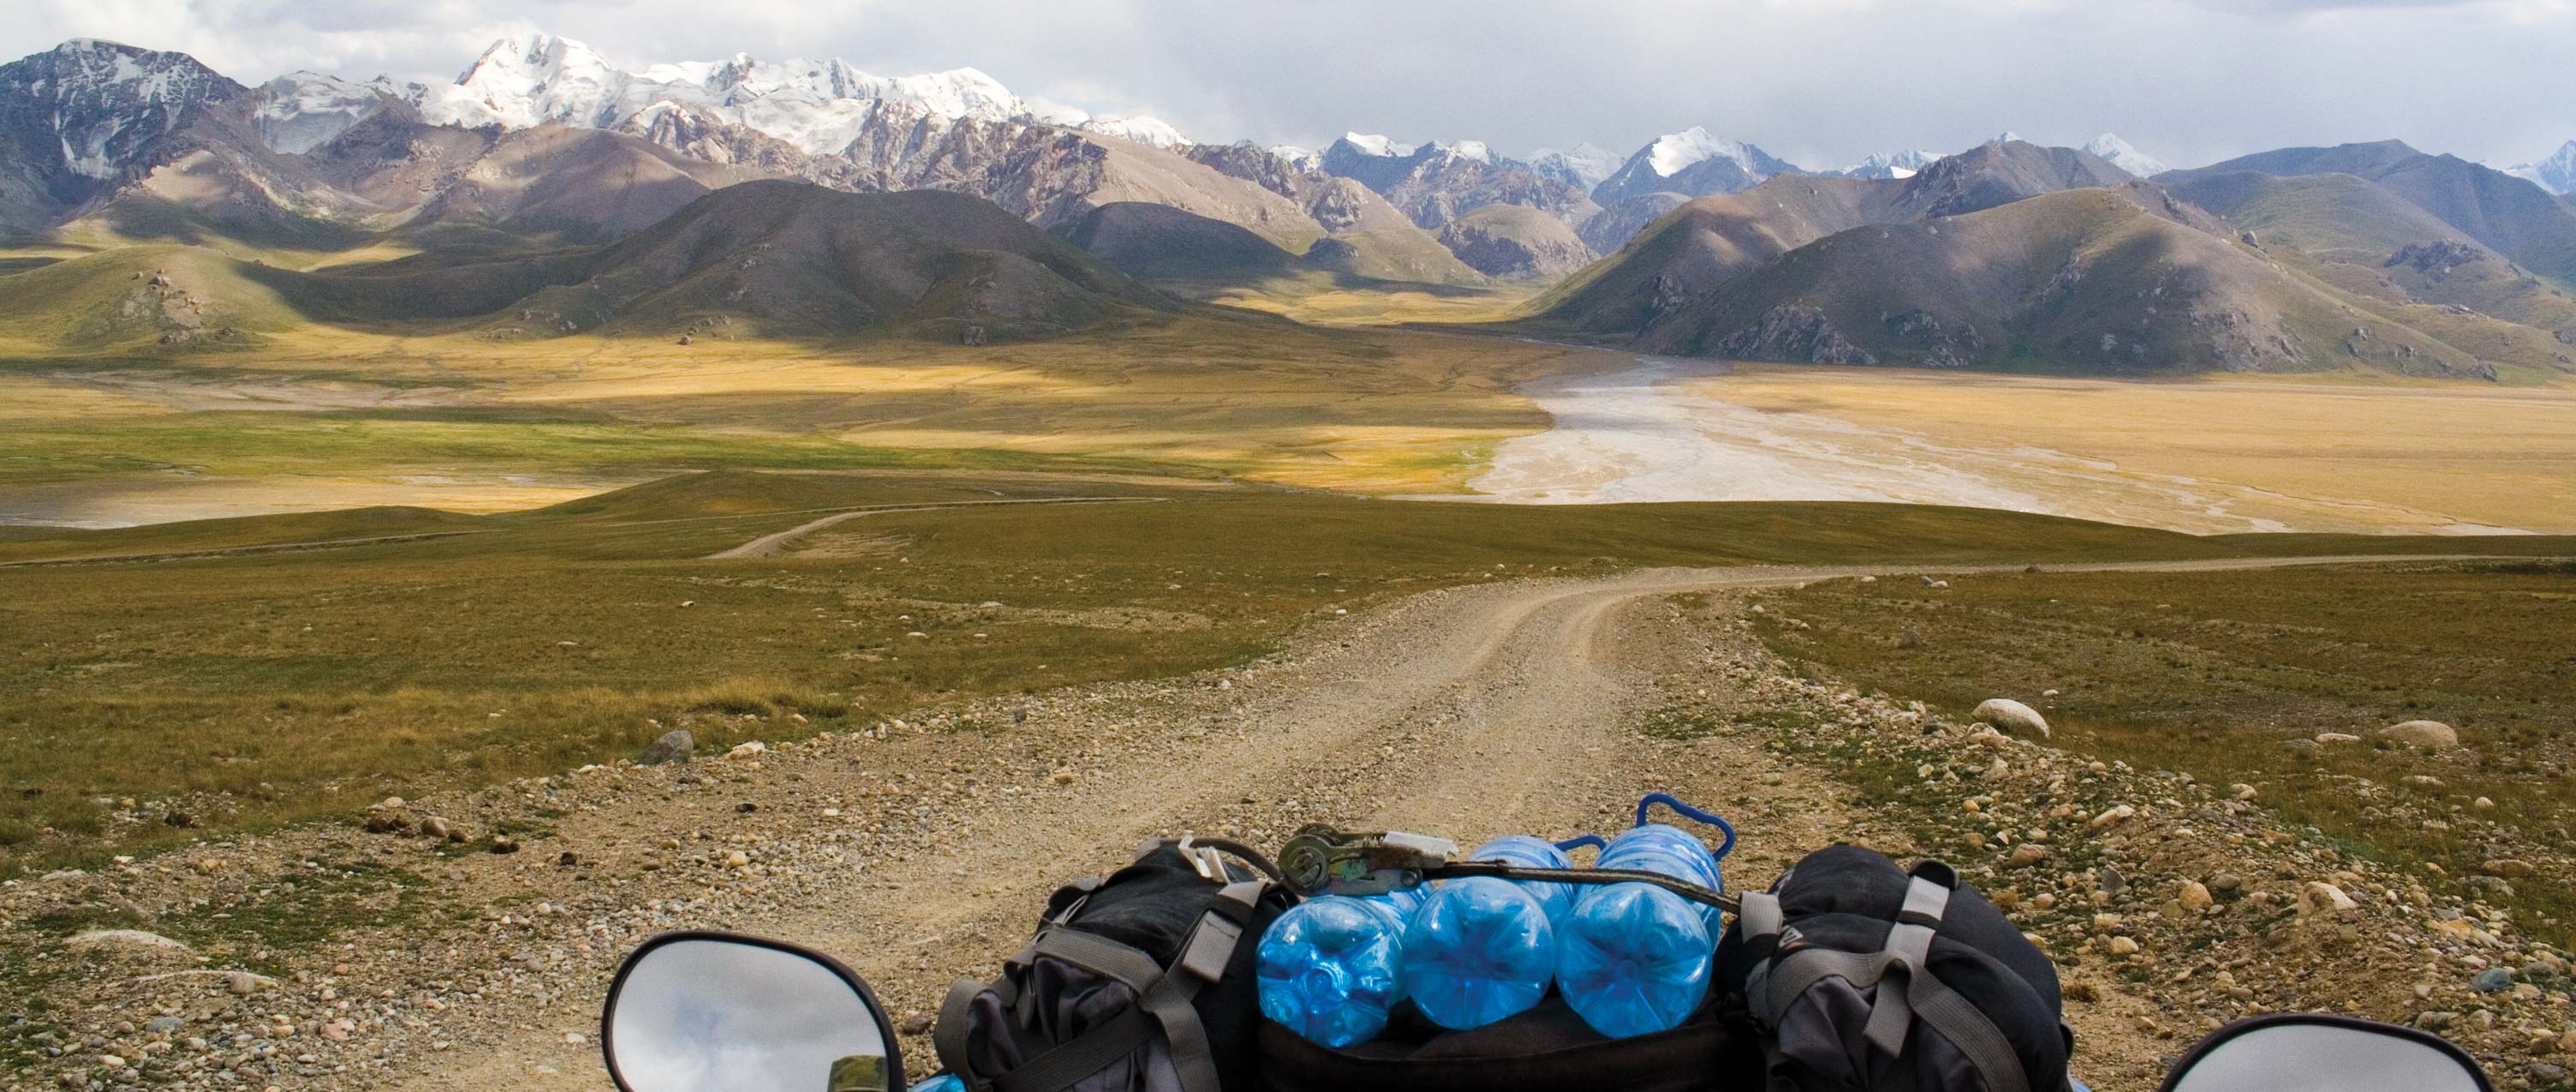 Offroad ATV - Motorrad Tour von Kirgistan in die Taklamakan Wüste